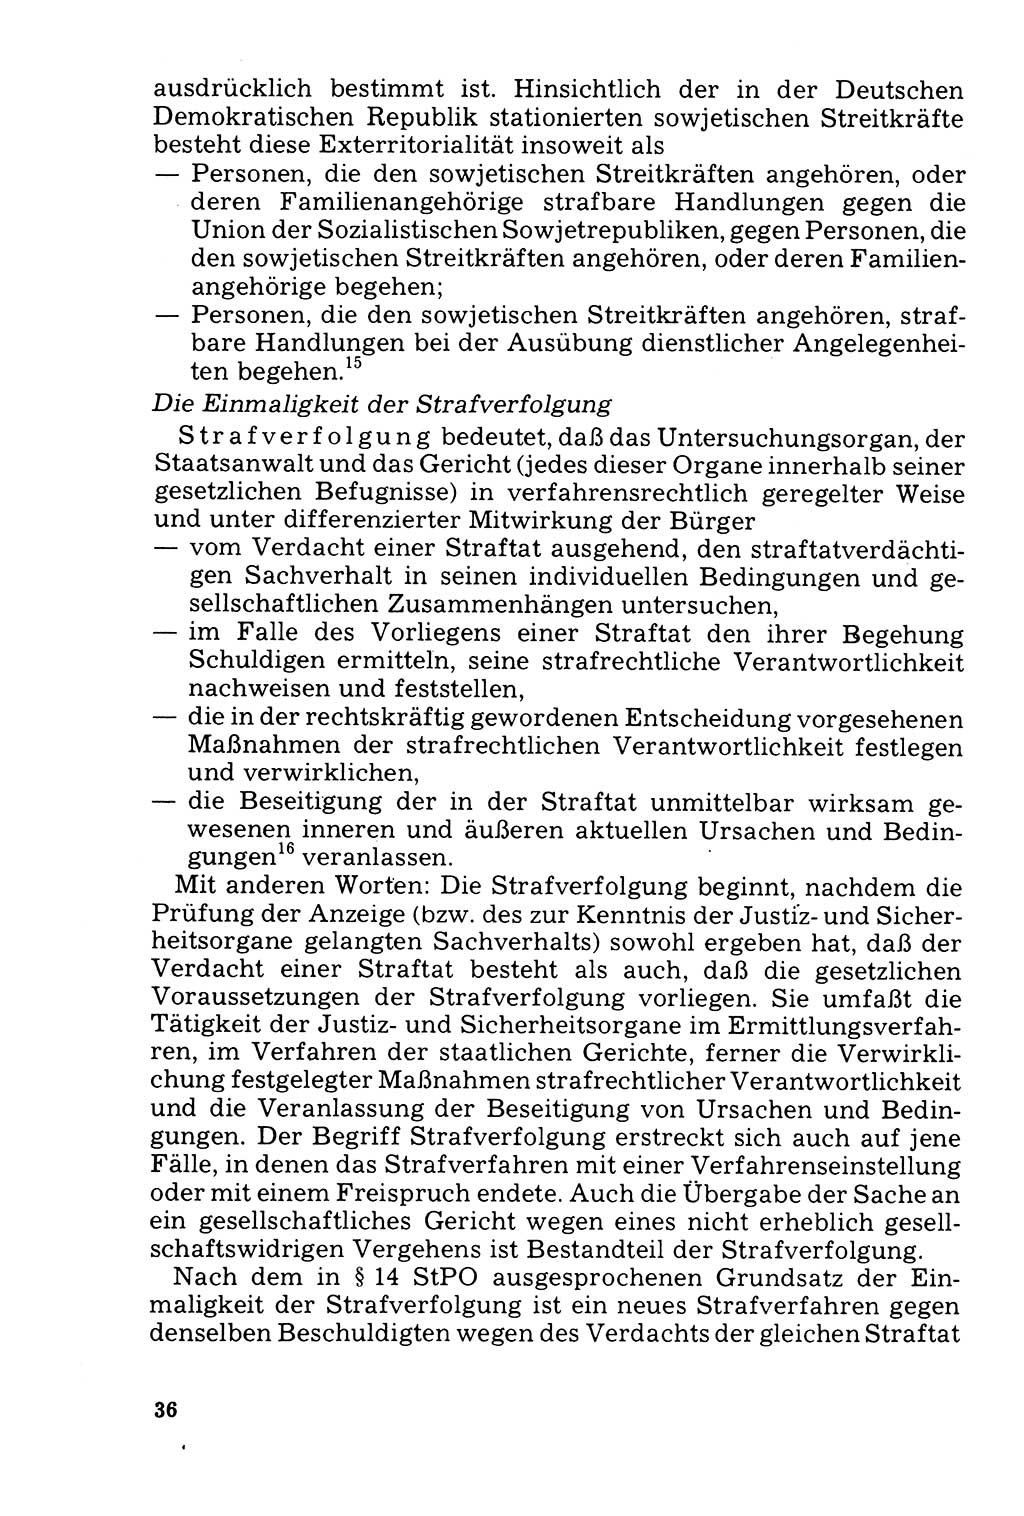 Der Abschluß des Ermittlungsverfahrens [Deutsche Demokratische Republik (DDR)] 1978, Seite 36 (Abschl. EV DDR 1978, S. 36)